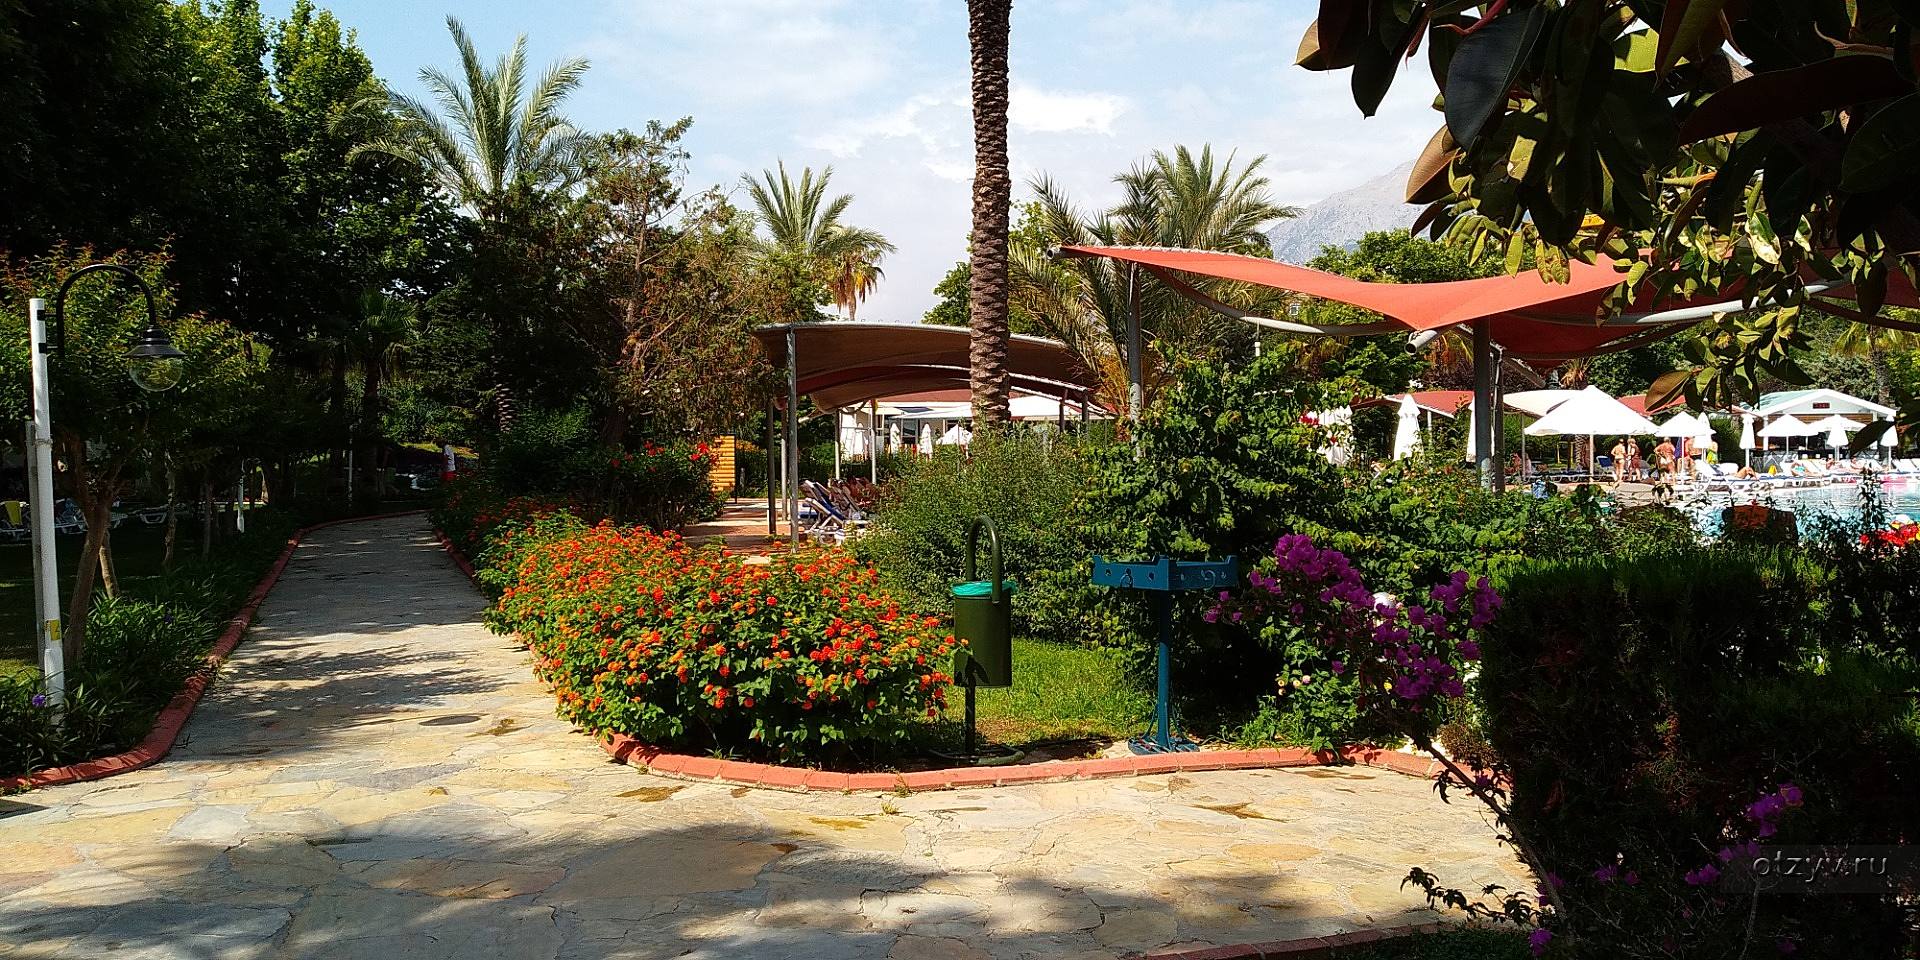 Queen's Park Le Jardin Resort